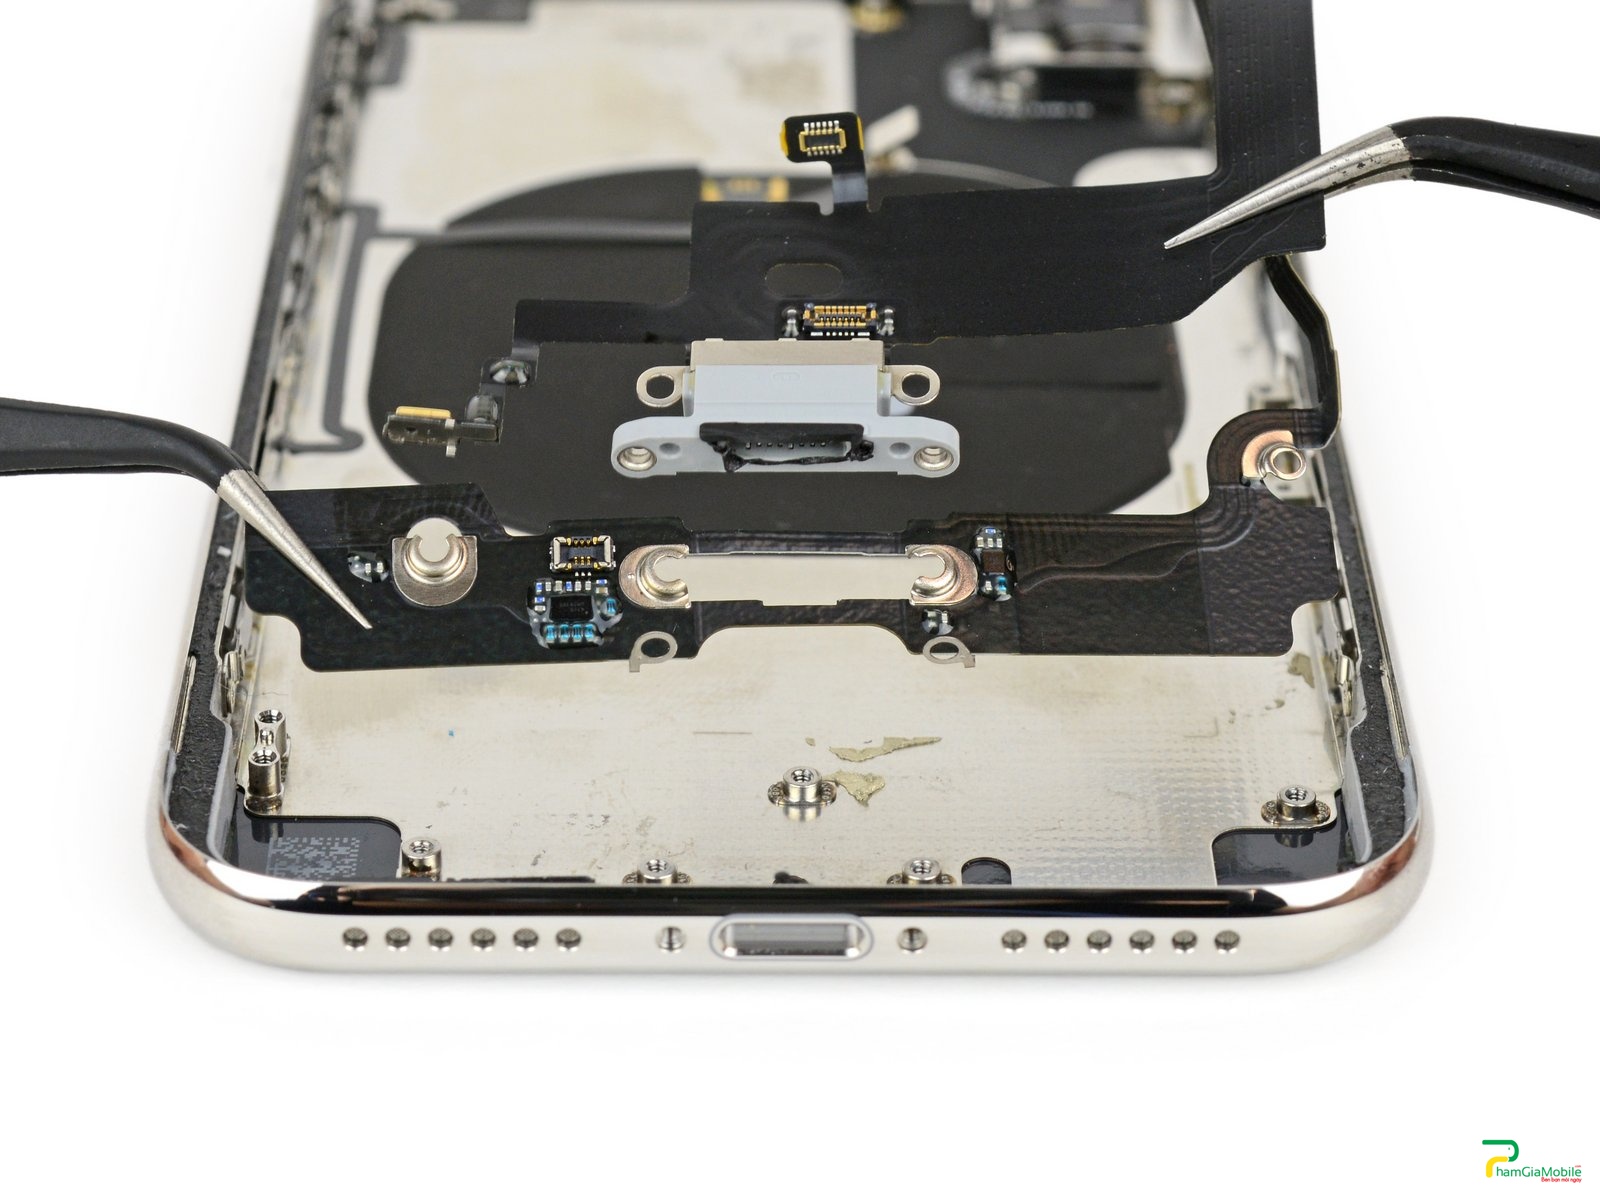 Địa chỉ chuyên sửa chữa, sửa lỗi, thay thế khắc phục sạc iPhone X không báo gì, Sửa Sạc iPhone X thay thế Chân Sạc, thay Chui Sạc Chính hãng uy tín giá tốt tại Phamgiamobile 